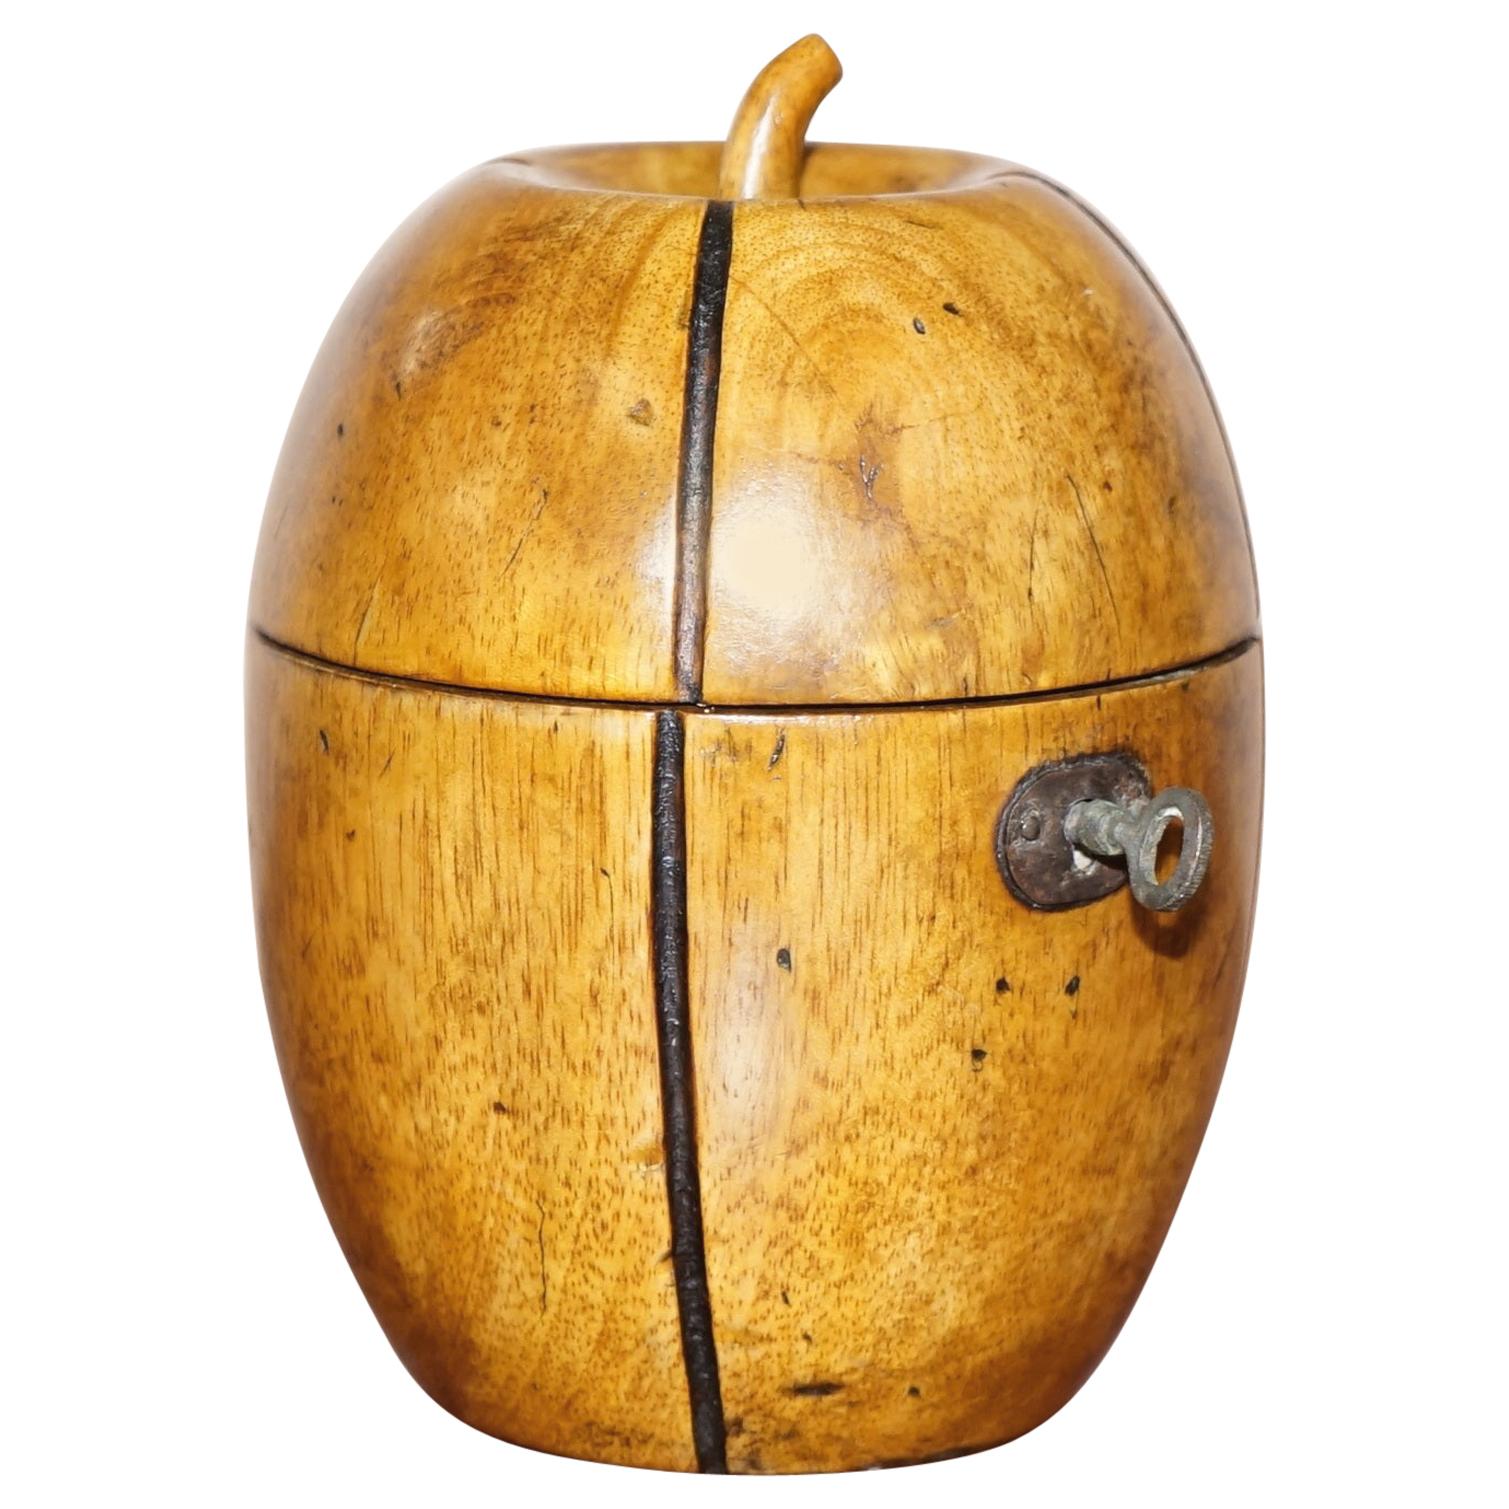 Rare circa 1820 Treen Hand Carved Apple Tea Caddy Original Key